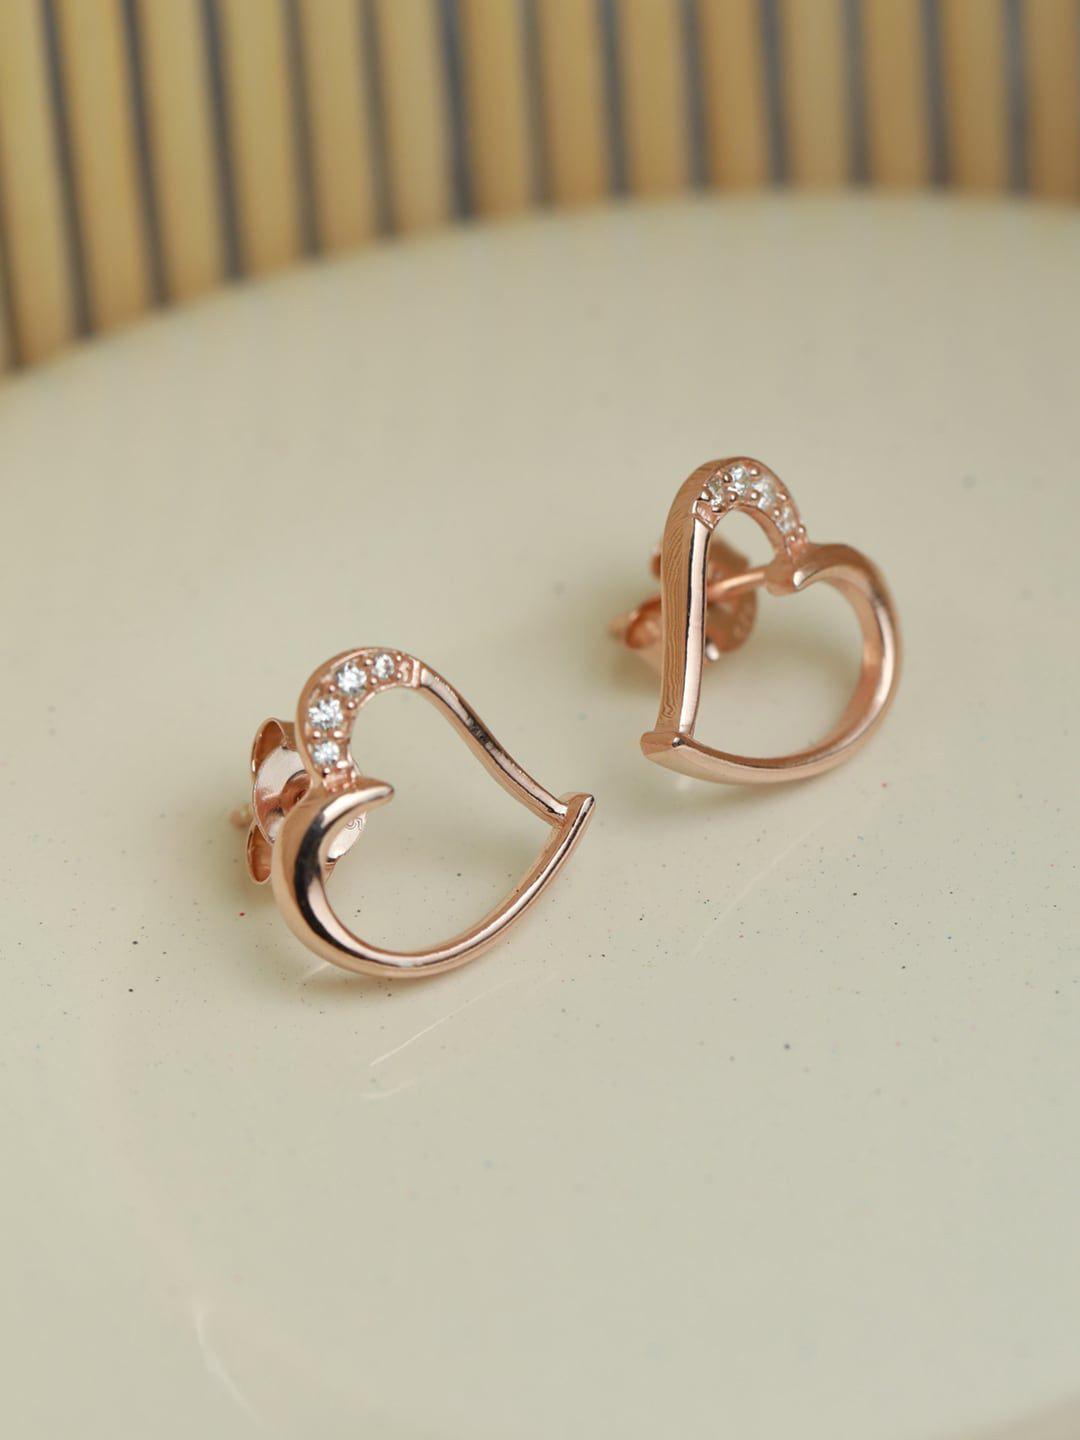 sheer by priyaasi rose gold 92.5 sterling silver heart shaped studs earrings